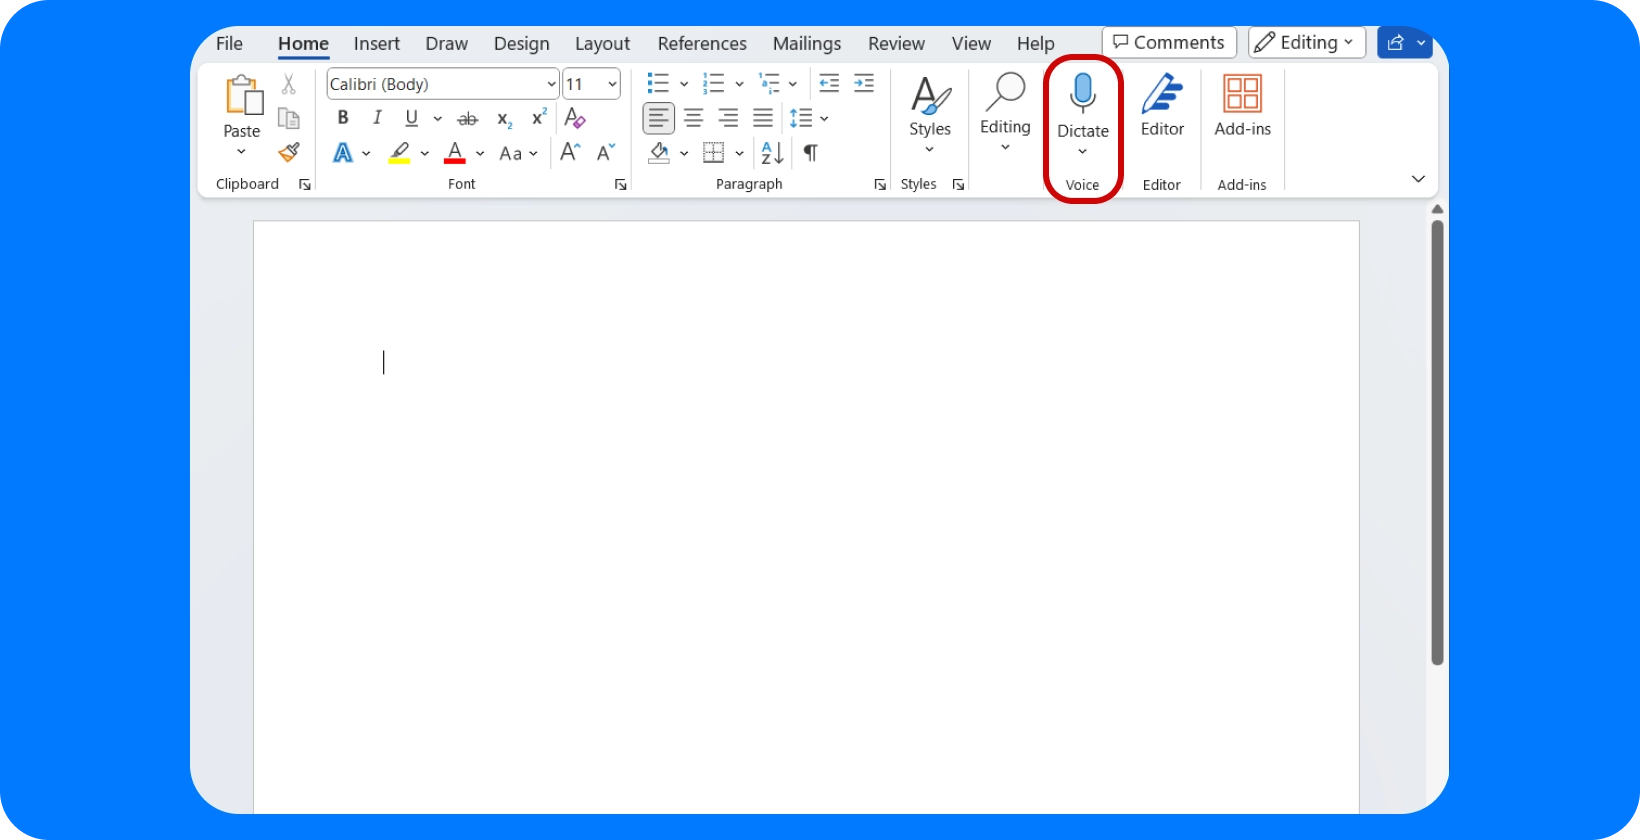 Microsoft Word rozhranie so zameraním na funkciu "Diktovať" pre jednoduché hlasové písanie.